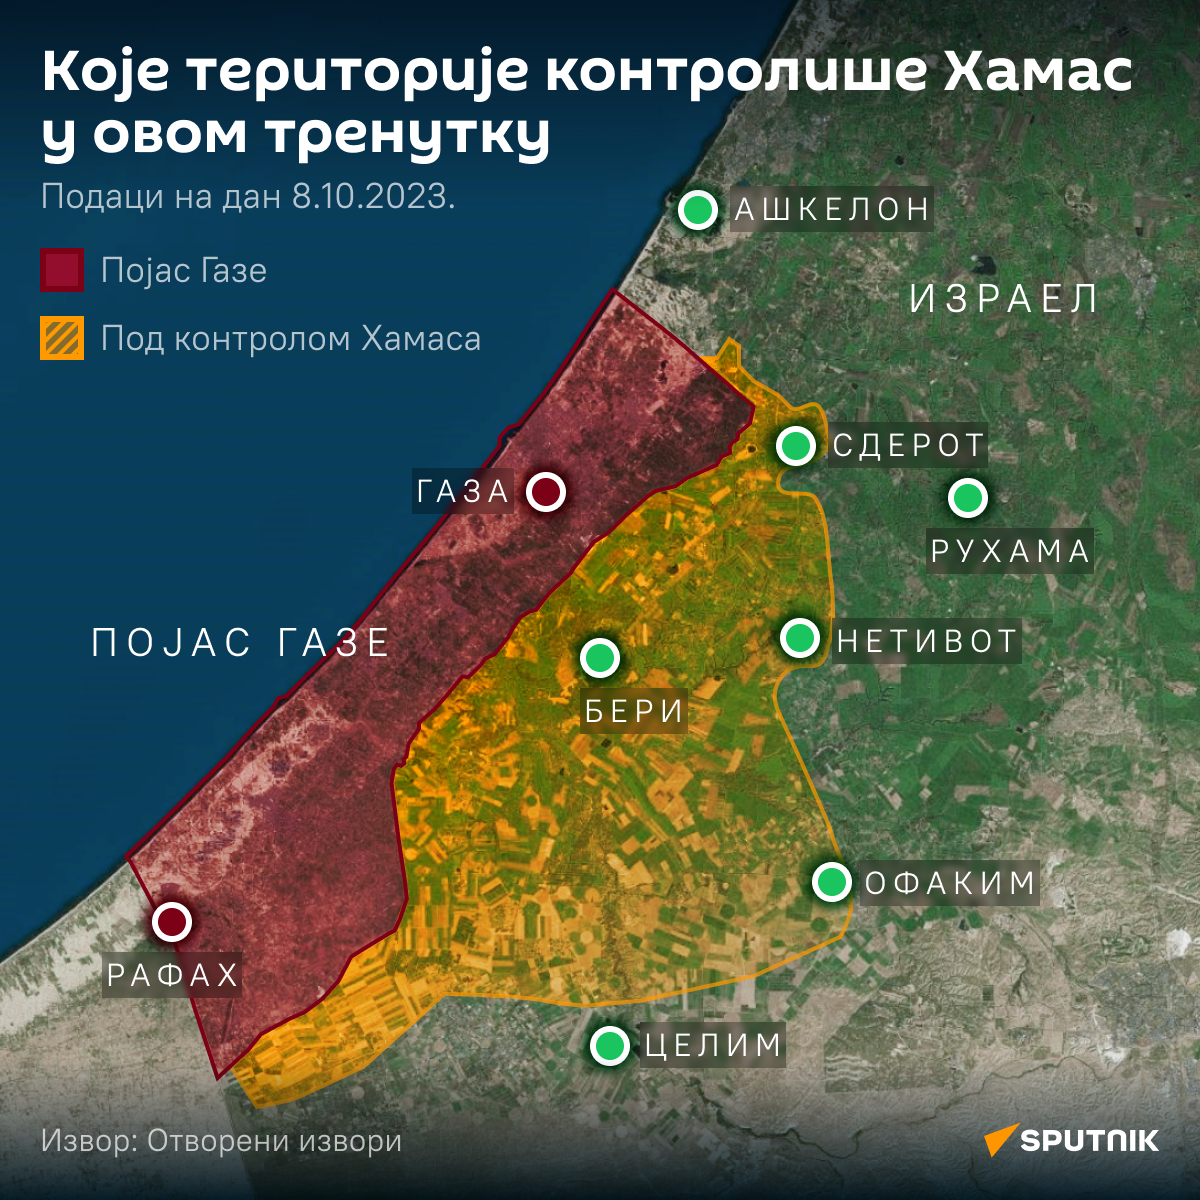 Коју територију контролише Хамас ЋИРИЛИЦА деск - Sputnik Србија